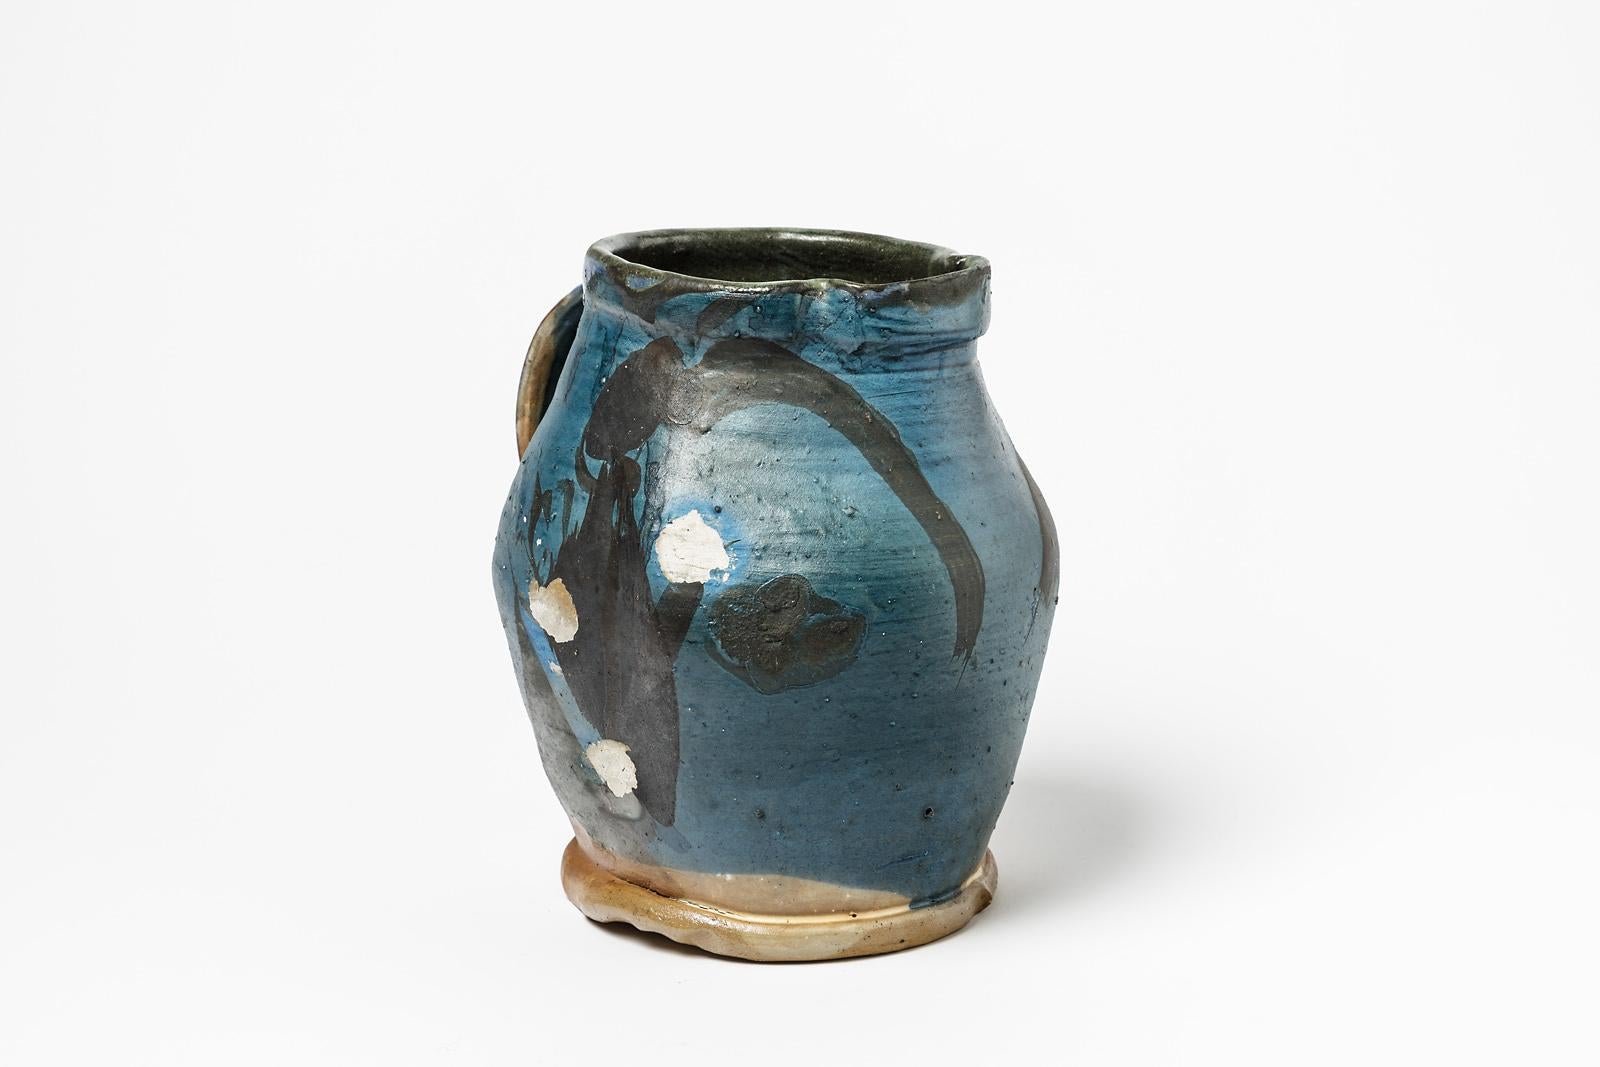 Michel lanos

Original Mitte des Jahrhunderts abstrakte Keramik Krug oder Vase

Dekoration aus blauer und schwarzer Keramikglasur

Original perfekter Zustand

Maße: Höhe: 21cm, groß: 18cm.